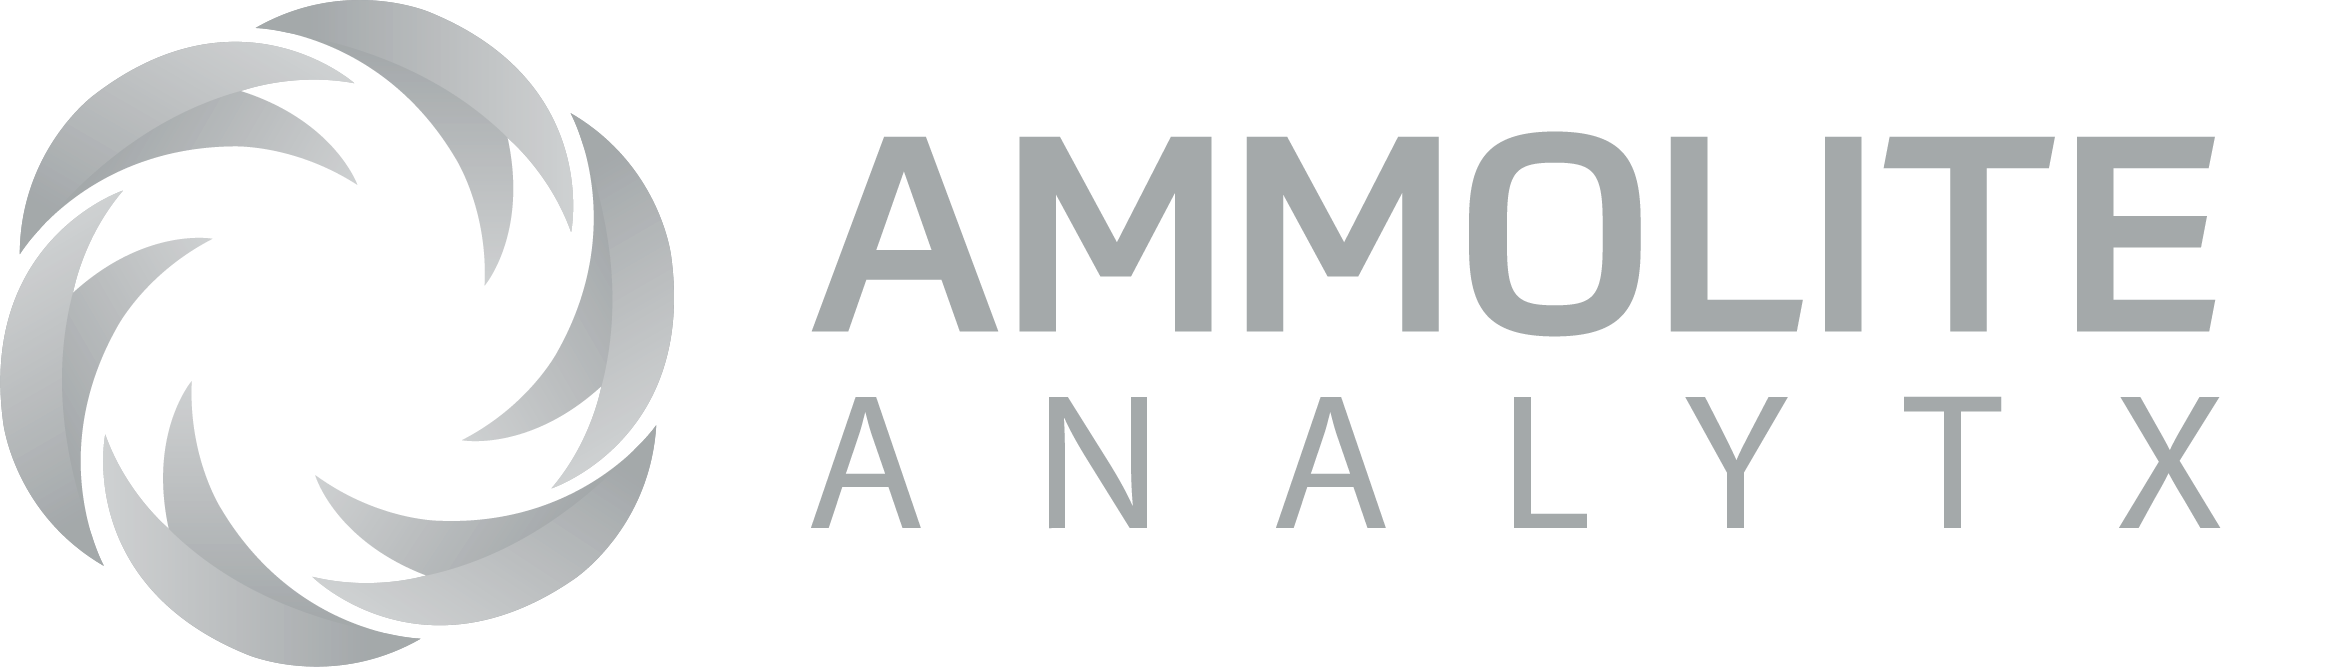 Ammolite Analytx Logo